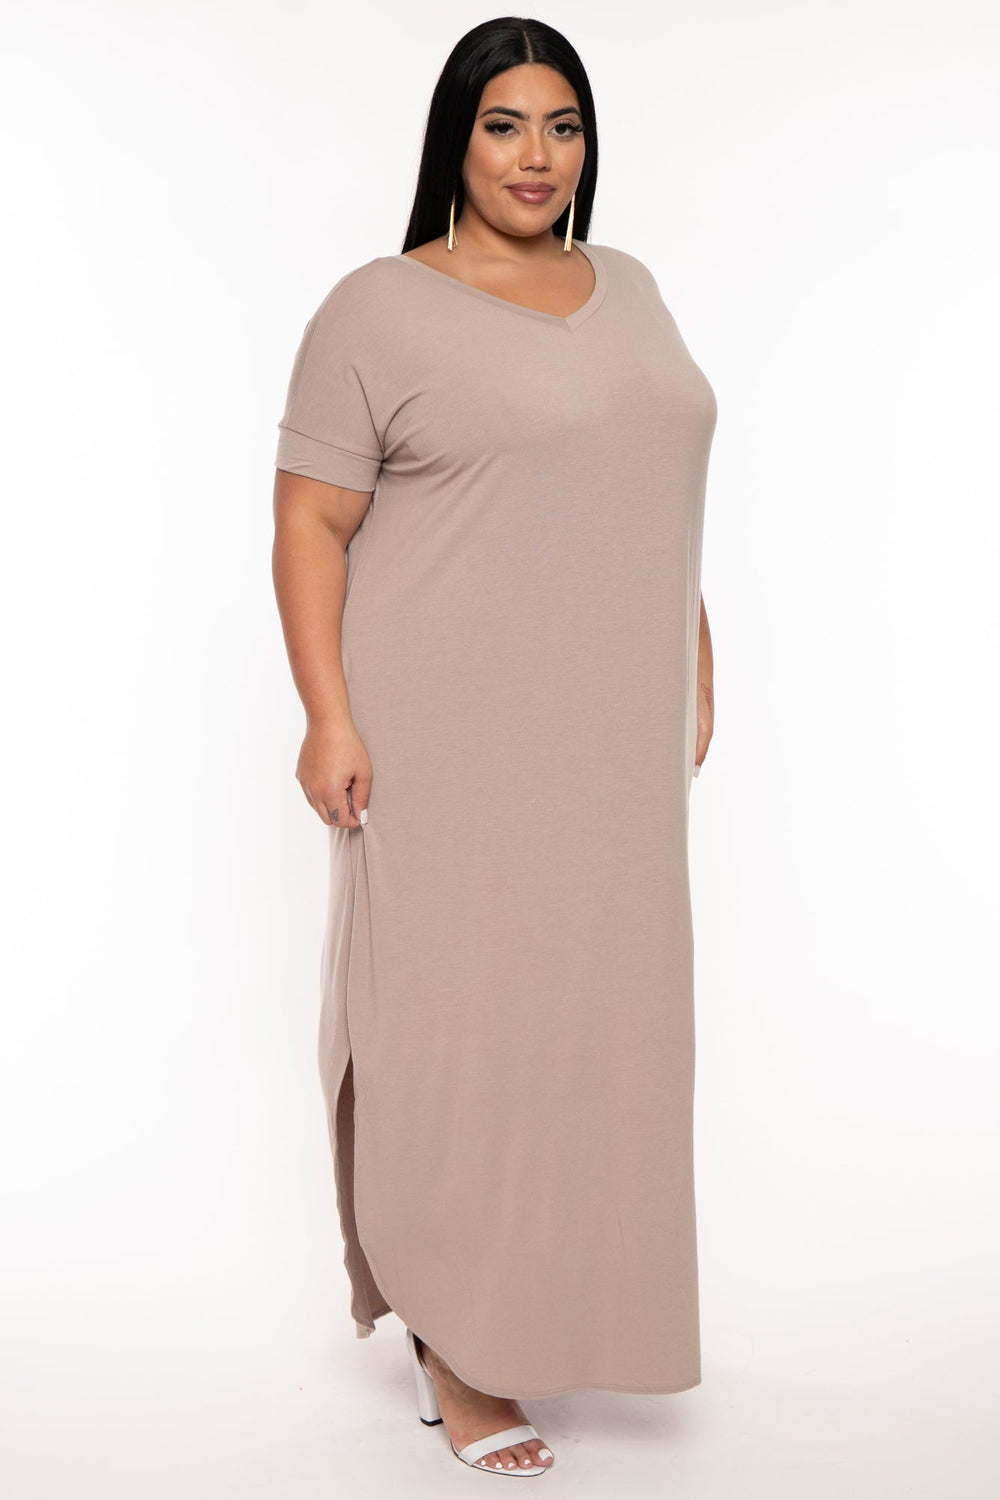 Zenana Dresses Plus Size Maxi T-Shirt Dress - Mocha